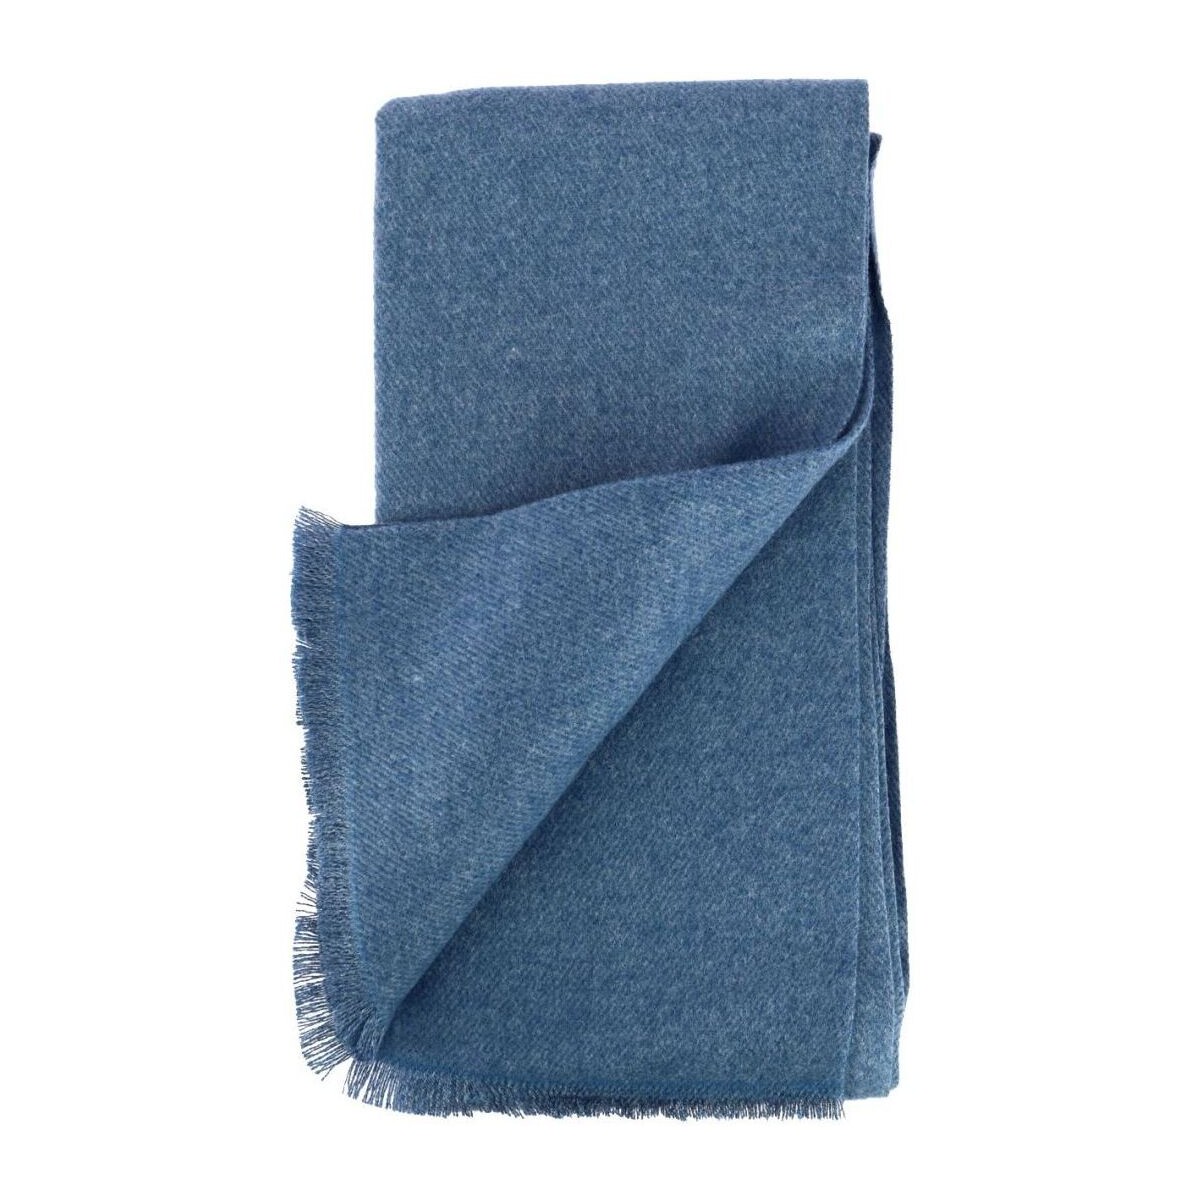 Accessoires textile Homme Echarpes / Etoles / Foulards Chevignon Echarpe Elric Bleu